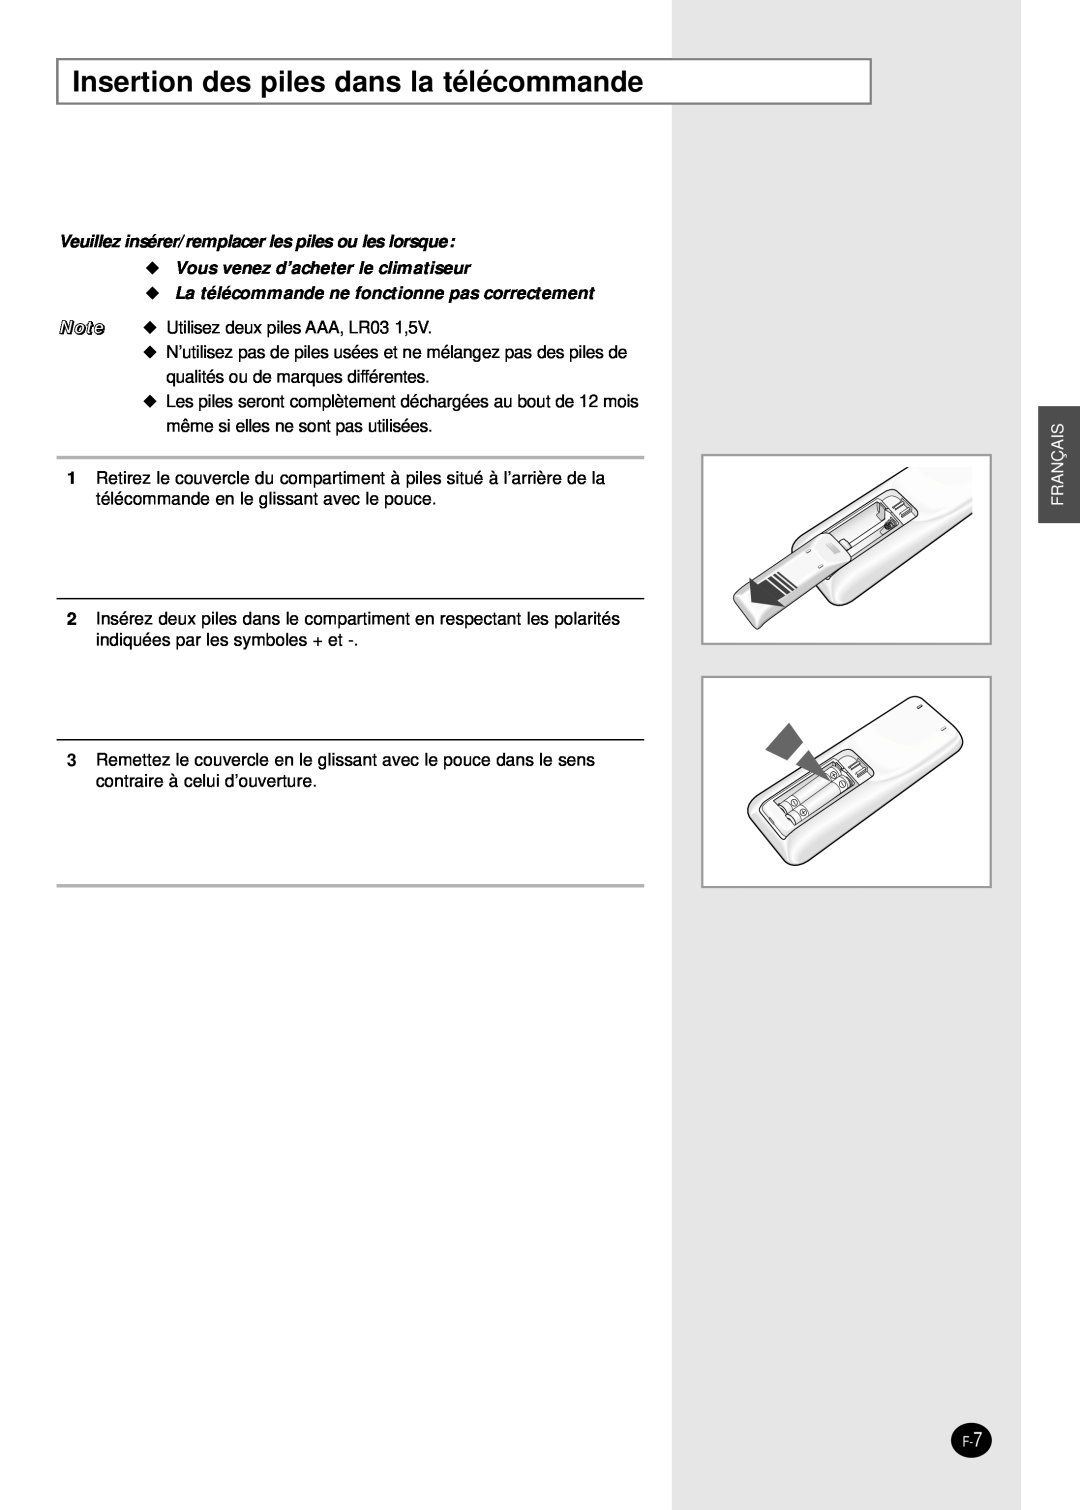 Samsung AS24HPBN Insertion des piles dans la télécommande, Veuillez insérer/remplacer les piles ou les lorsque, Français 